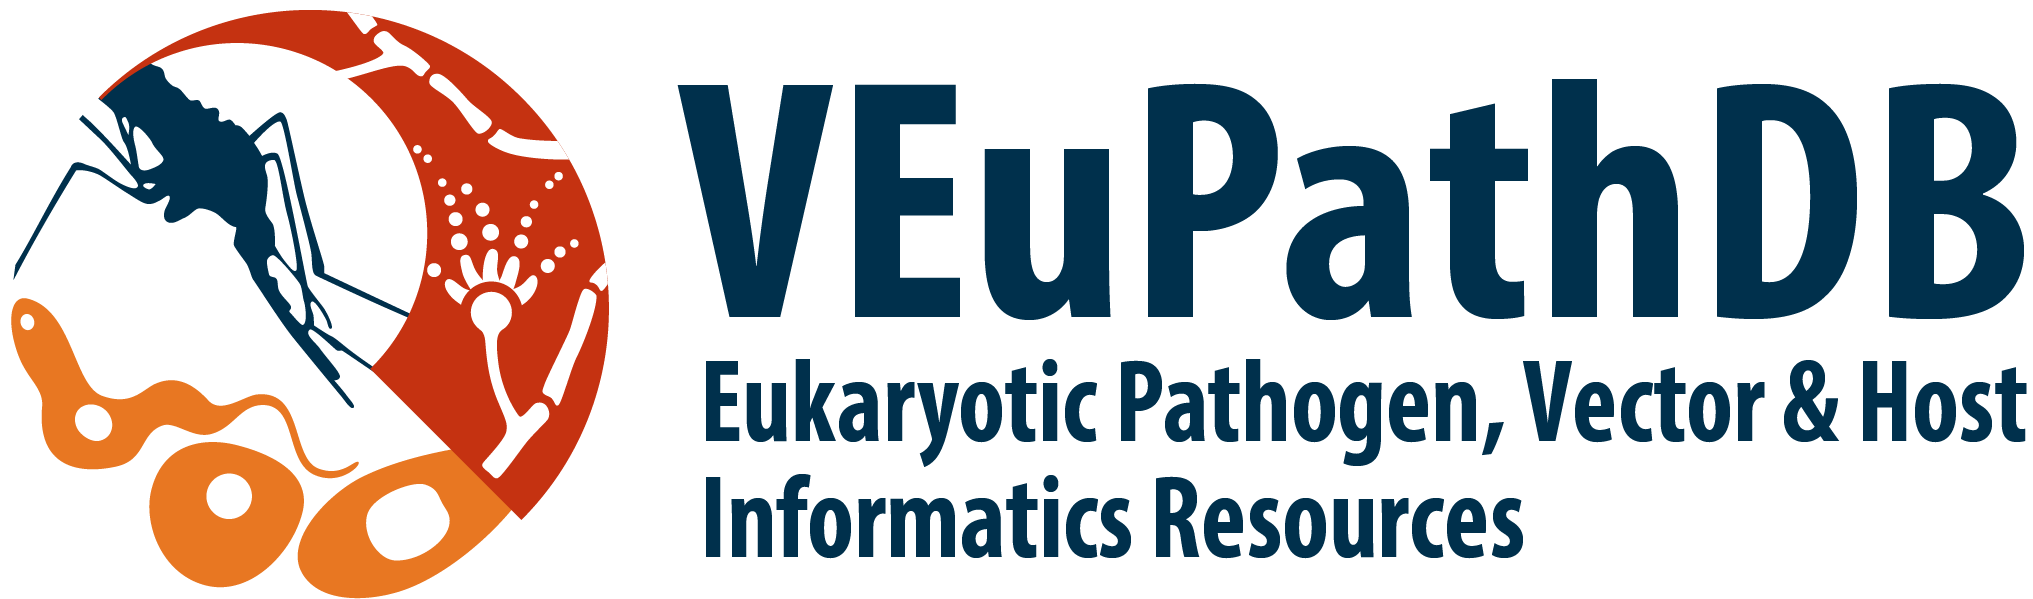 EuPathDB Logo